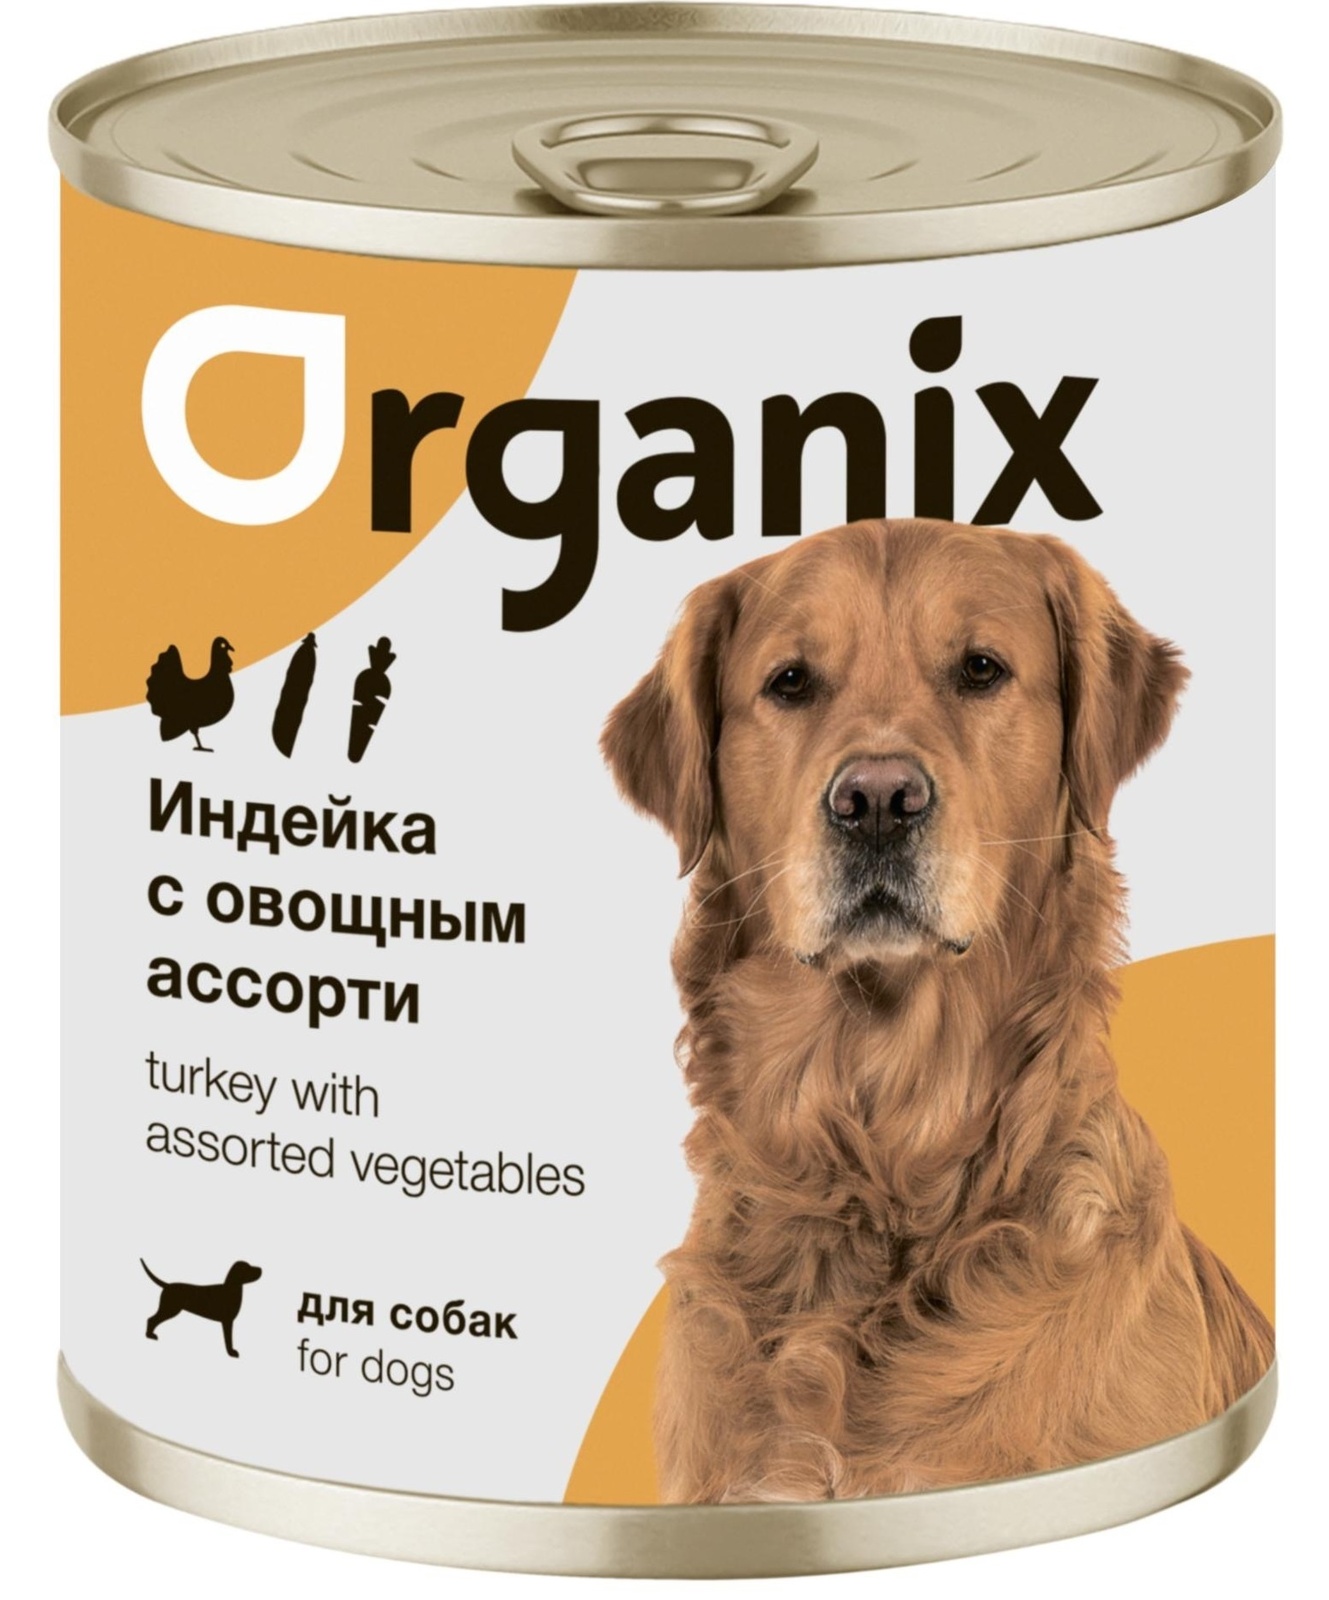 Organix консервы Organix консервы для собак Индейка с овощным ассорти (400 г) organix консервы organix консервы для собак телятина с зеленой фасолью 400 г